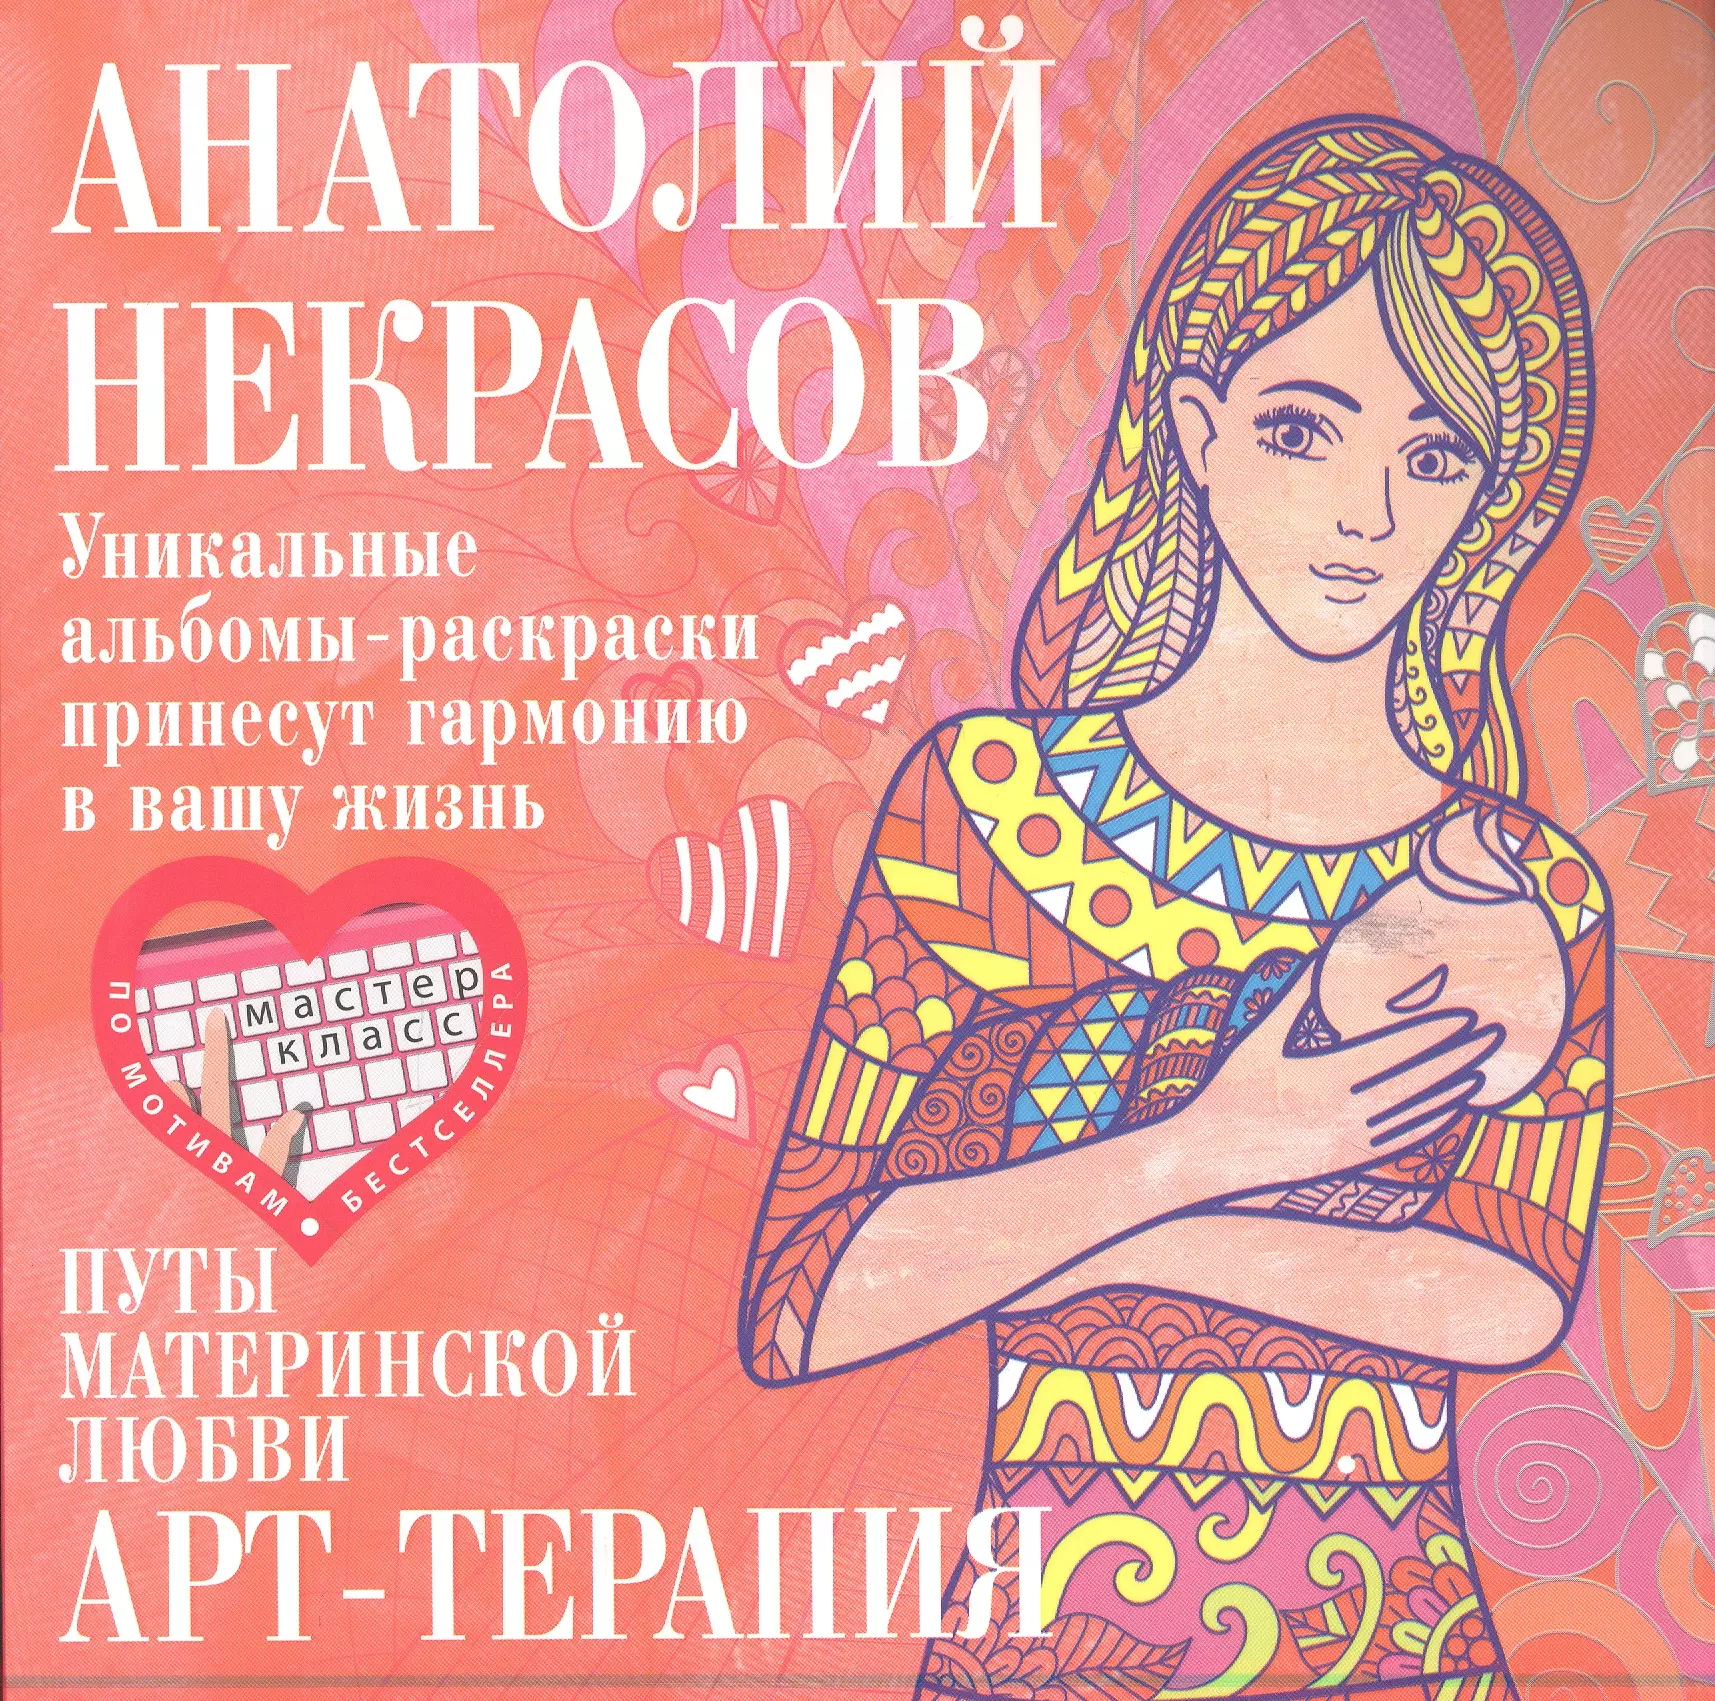 Некрасов Анатолий Александрович - Путы материнской любви